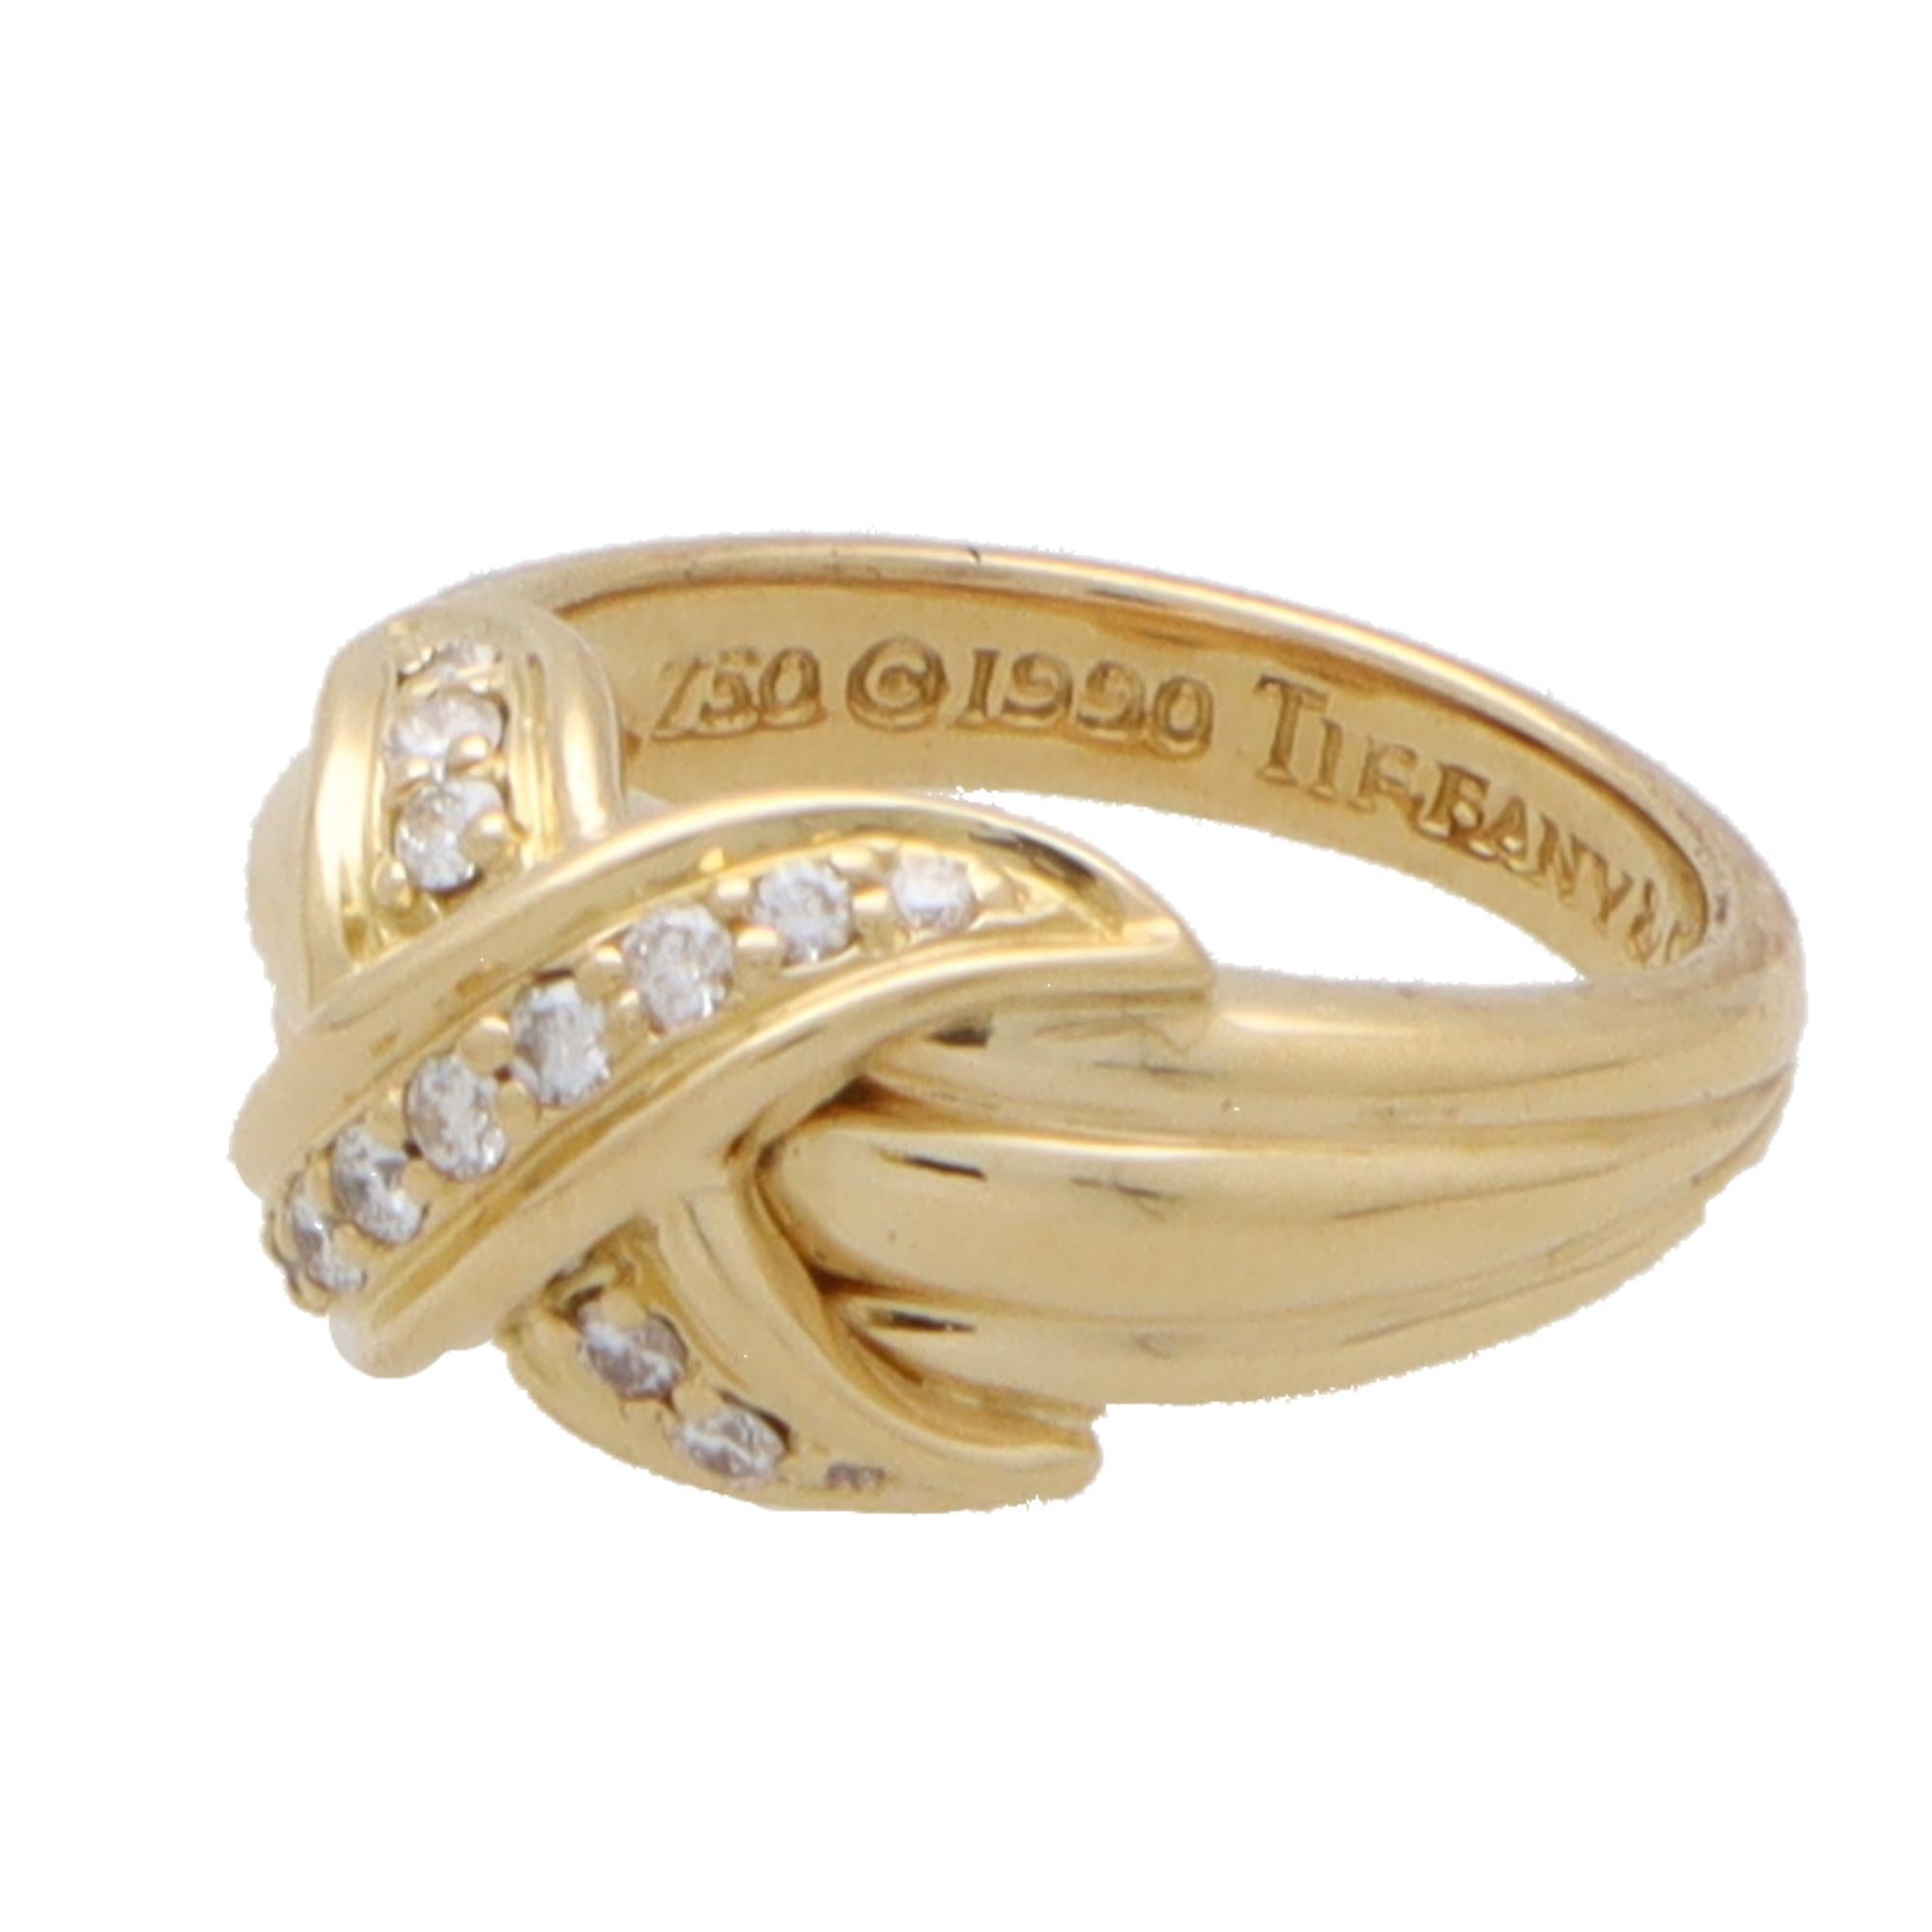 Eine schöne Vintage Tiffany & Co. Signatur Kreuz Ring in 18k Gelbgold.

Der Ring zeigt vor allem das ikonische Tiffany-Kreuzmotiv, das auf den geriffelten Schultern sitzt. Das Kreuz ist durchgehend mit runden Diamanten im Brillantschliff besetzt.